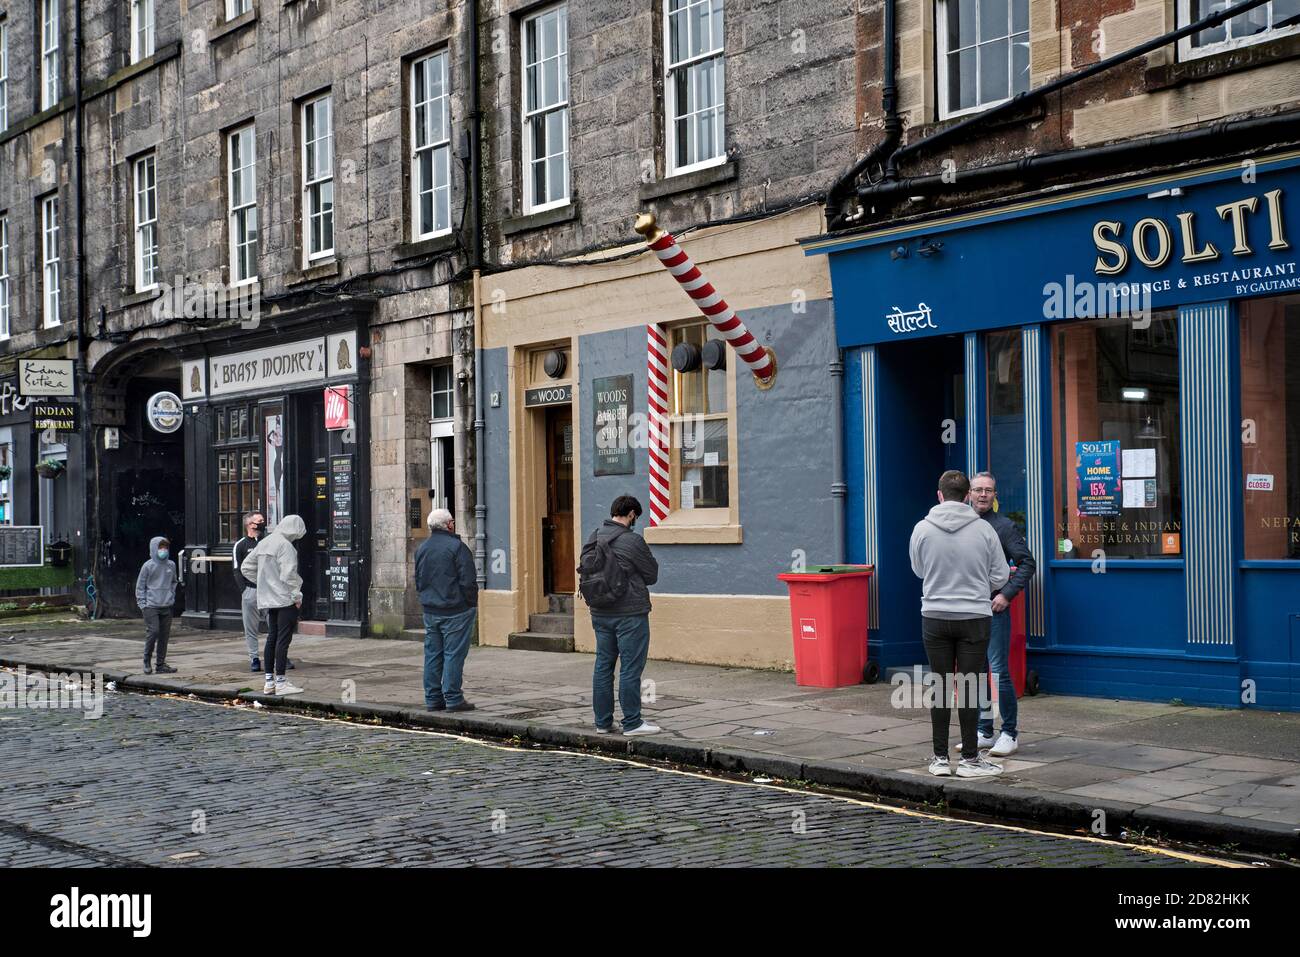 Gesellschaftlich distanzierte Schlange für Woods Barbers in der Drummond Street, Edinburgh, Schottland, Großbritannien. Stockfoto